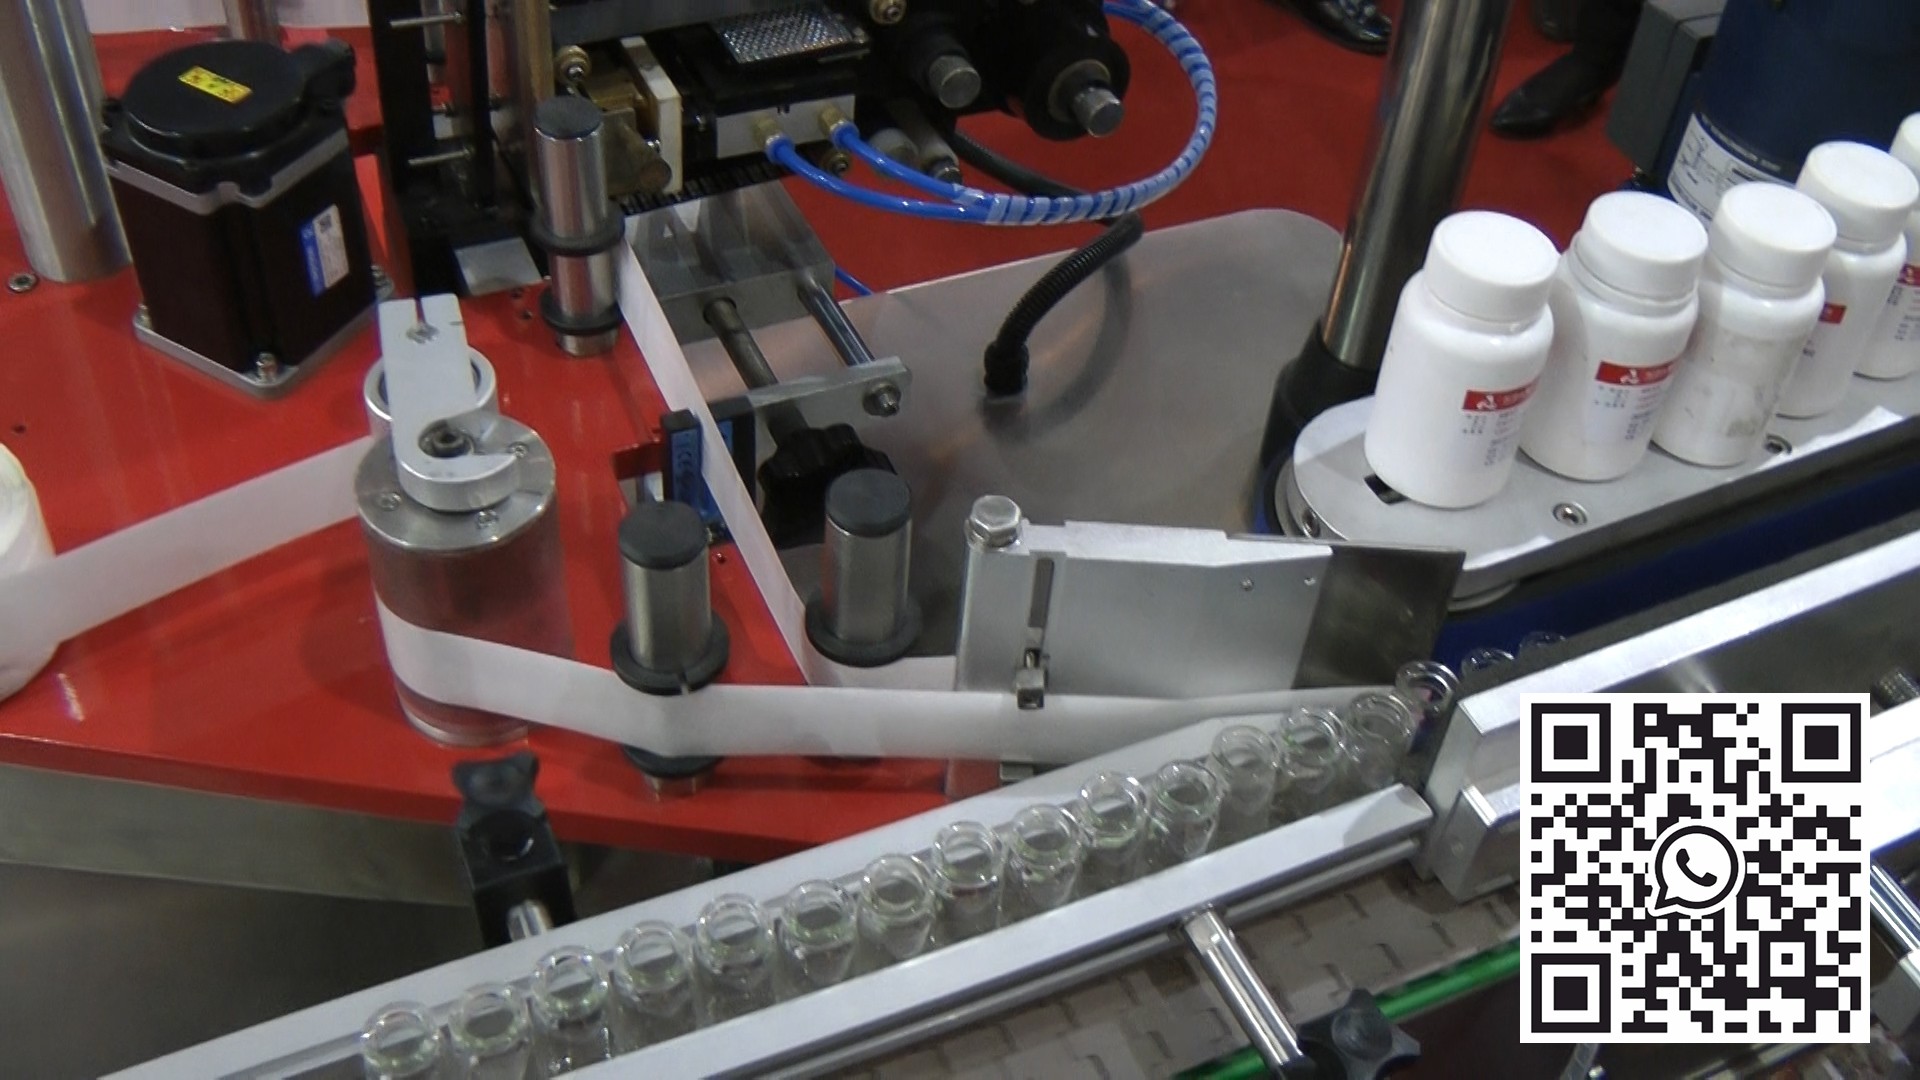 معدات وضع العلامات الأوتوماتيكية على قوارير البنسلين في الإنتاج الصيدلاني